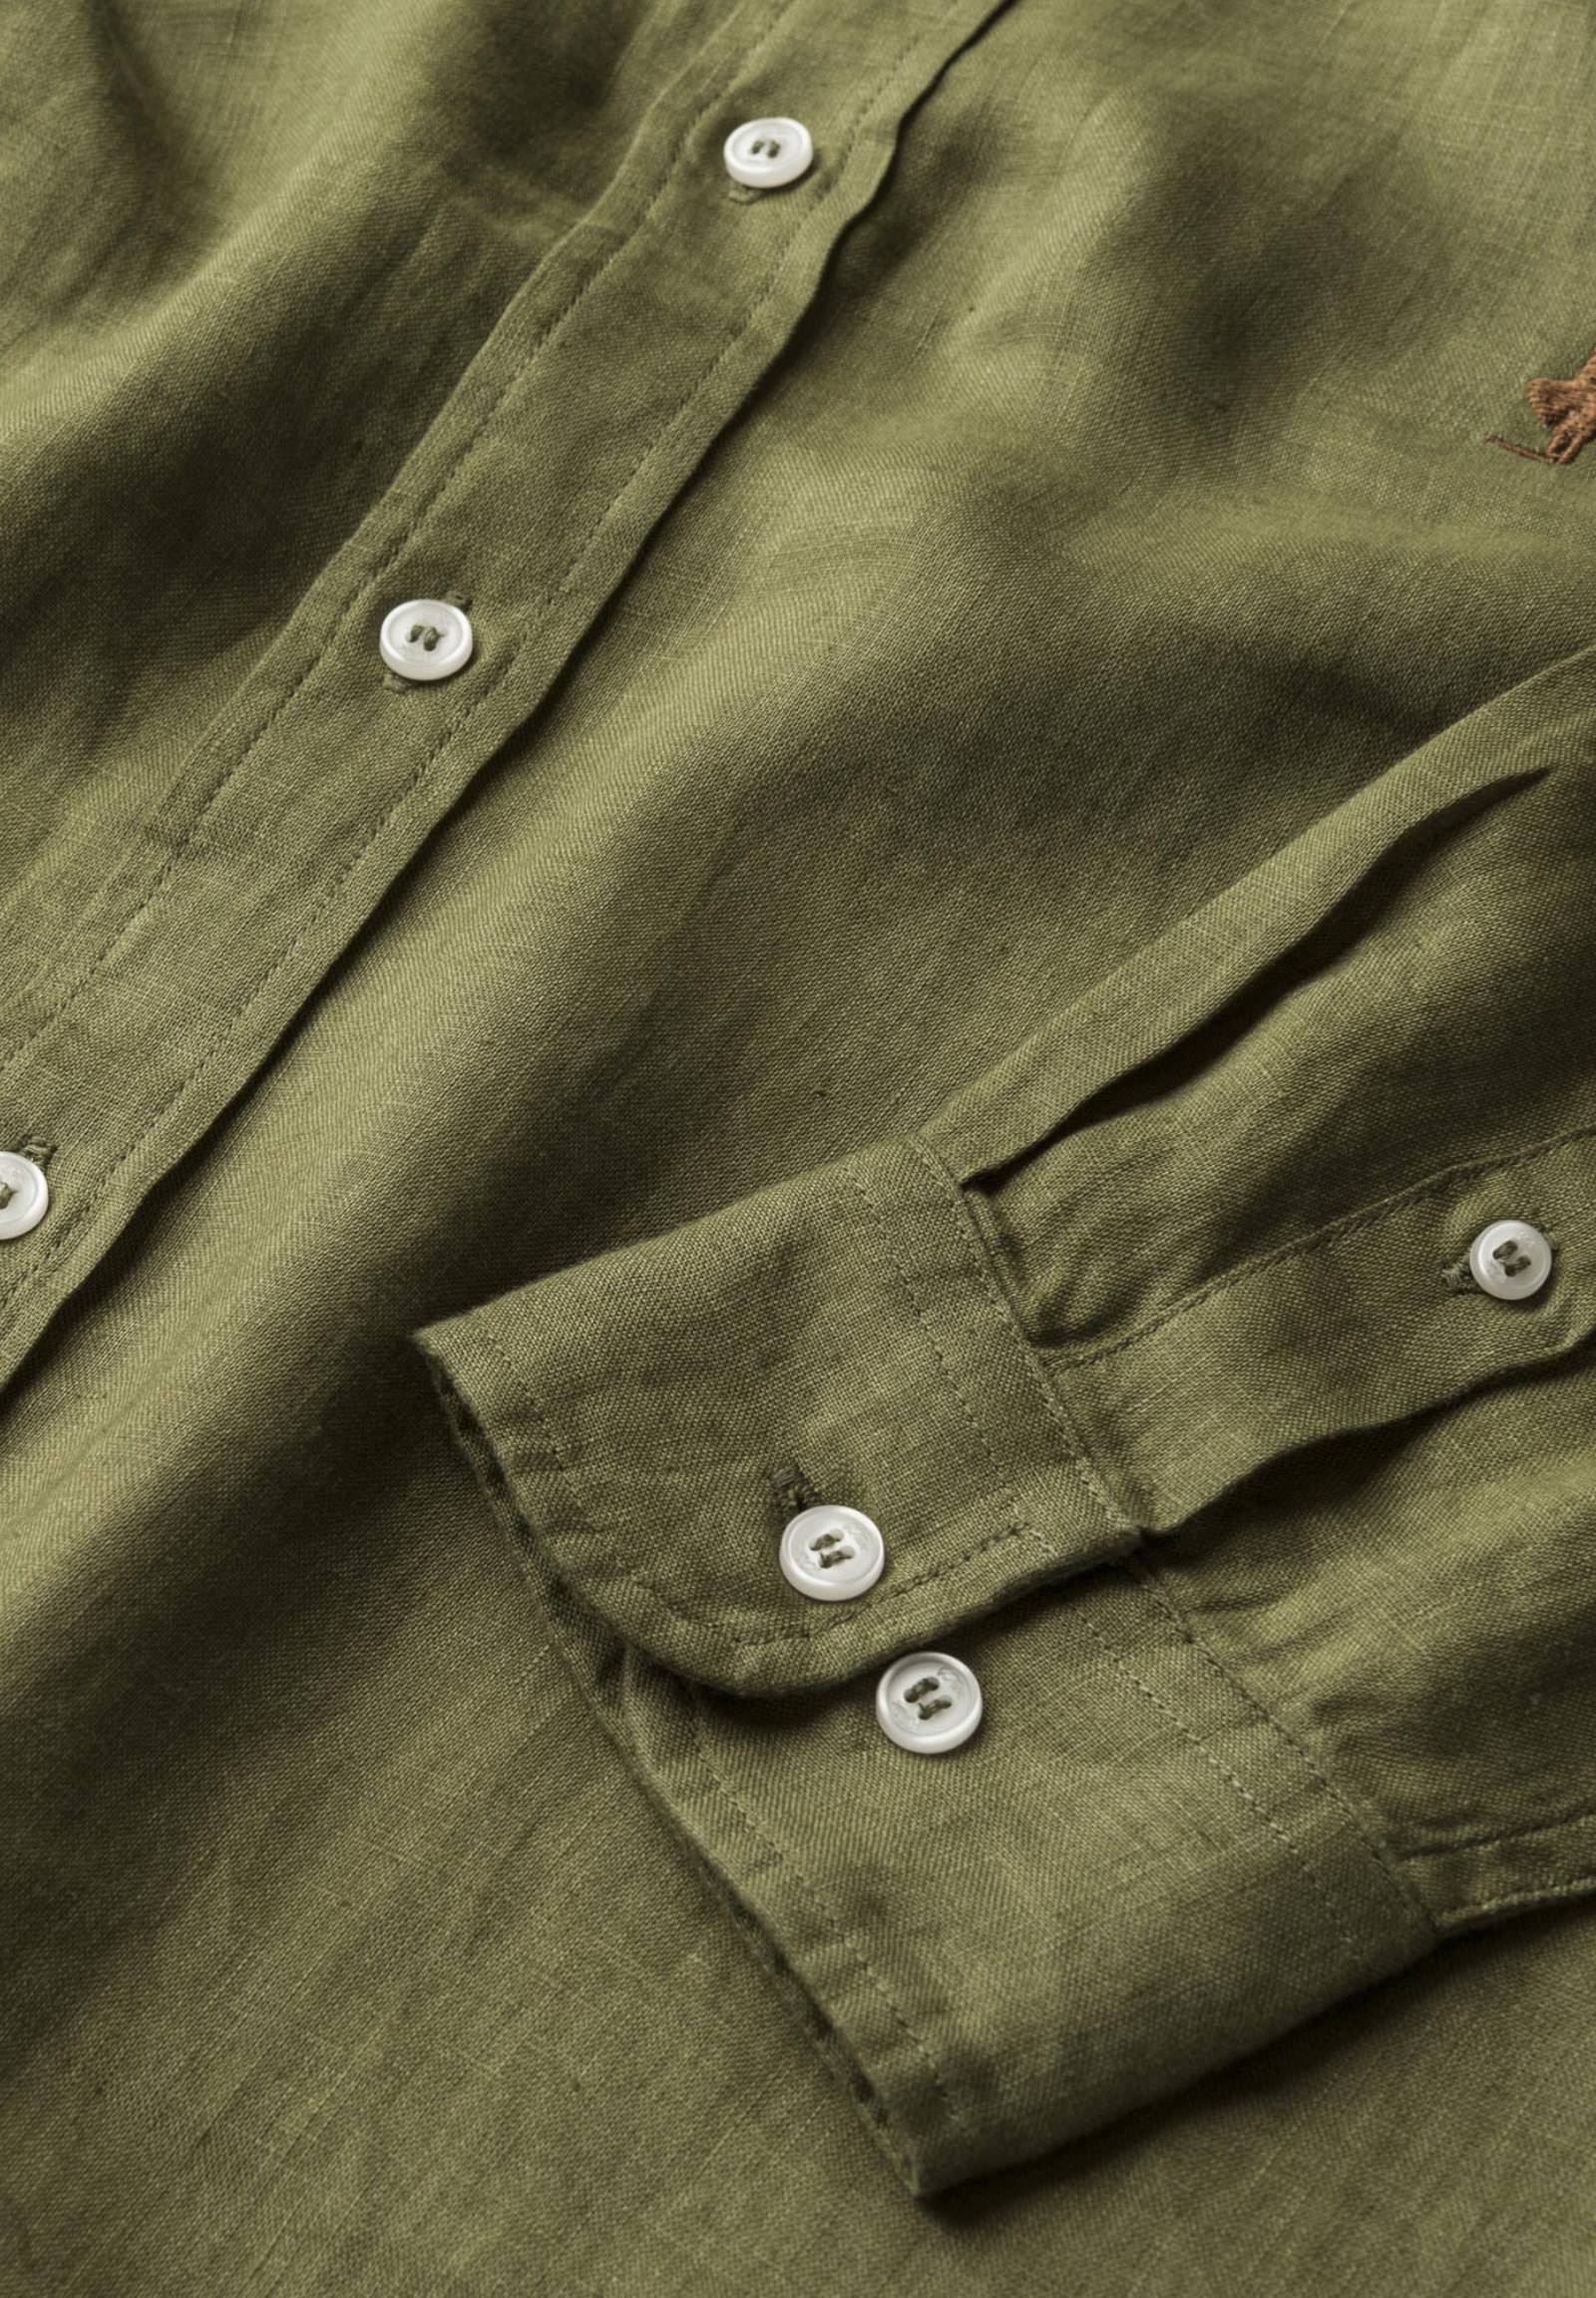 Long Sleeve Shirt 10msh202-02608 Army Green